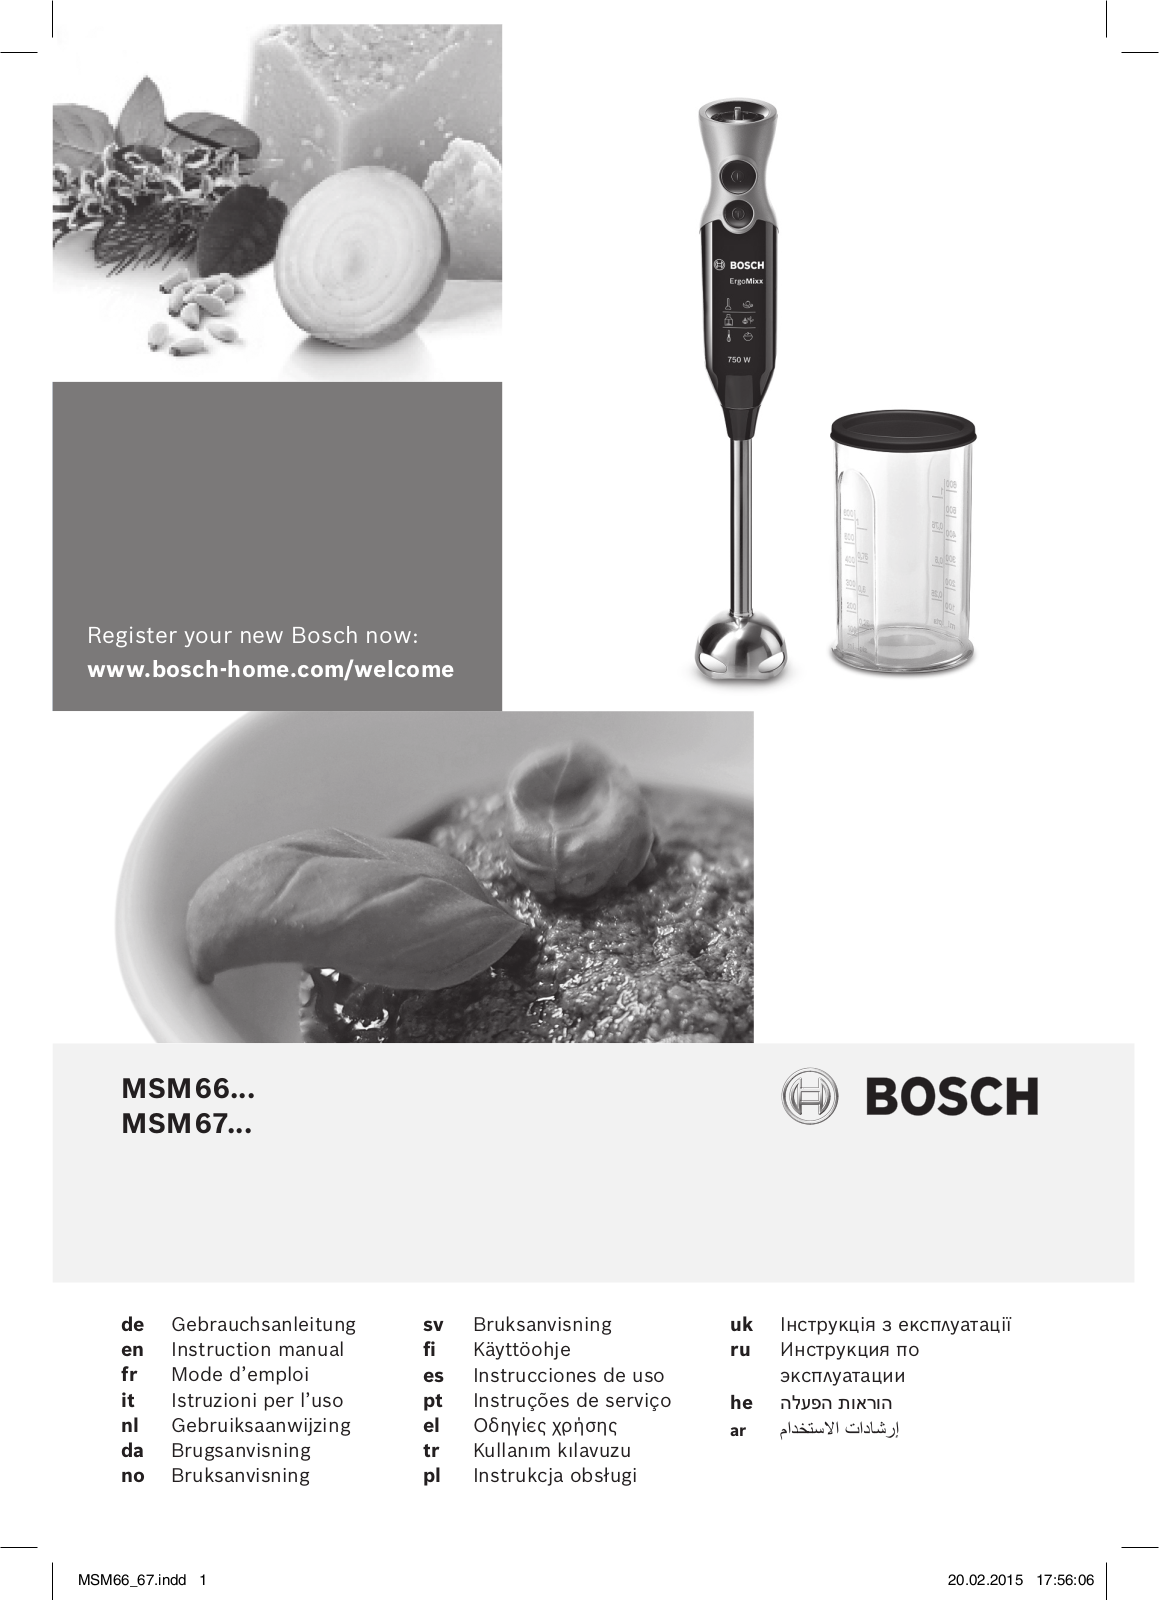 Bosch MSM66150, MSM66155, MSM67170 User Manual